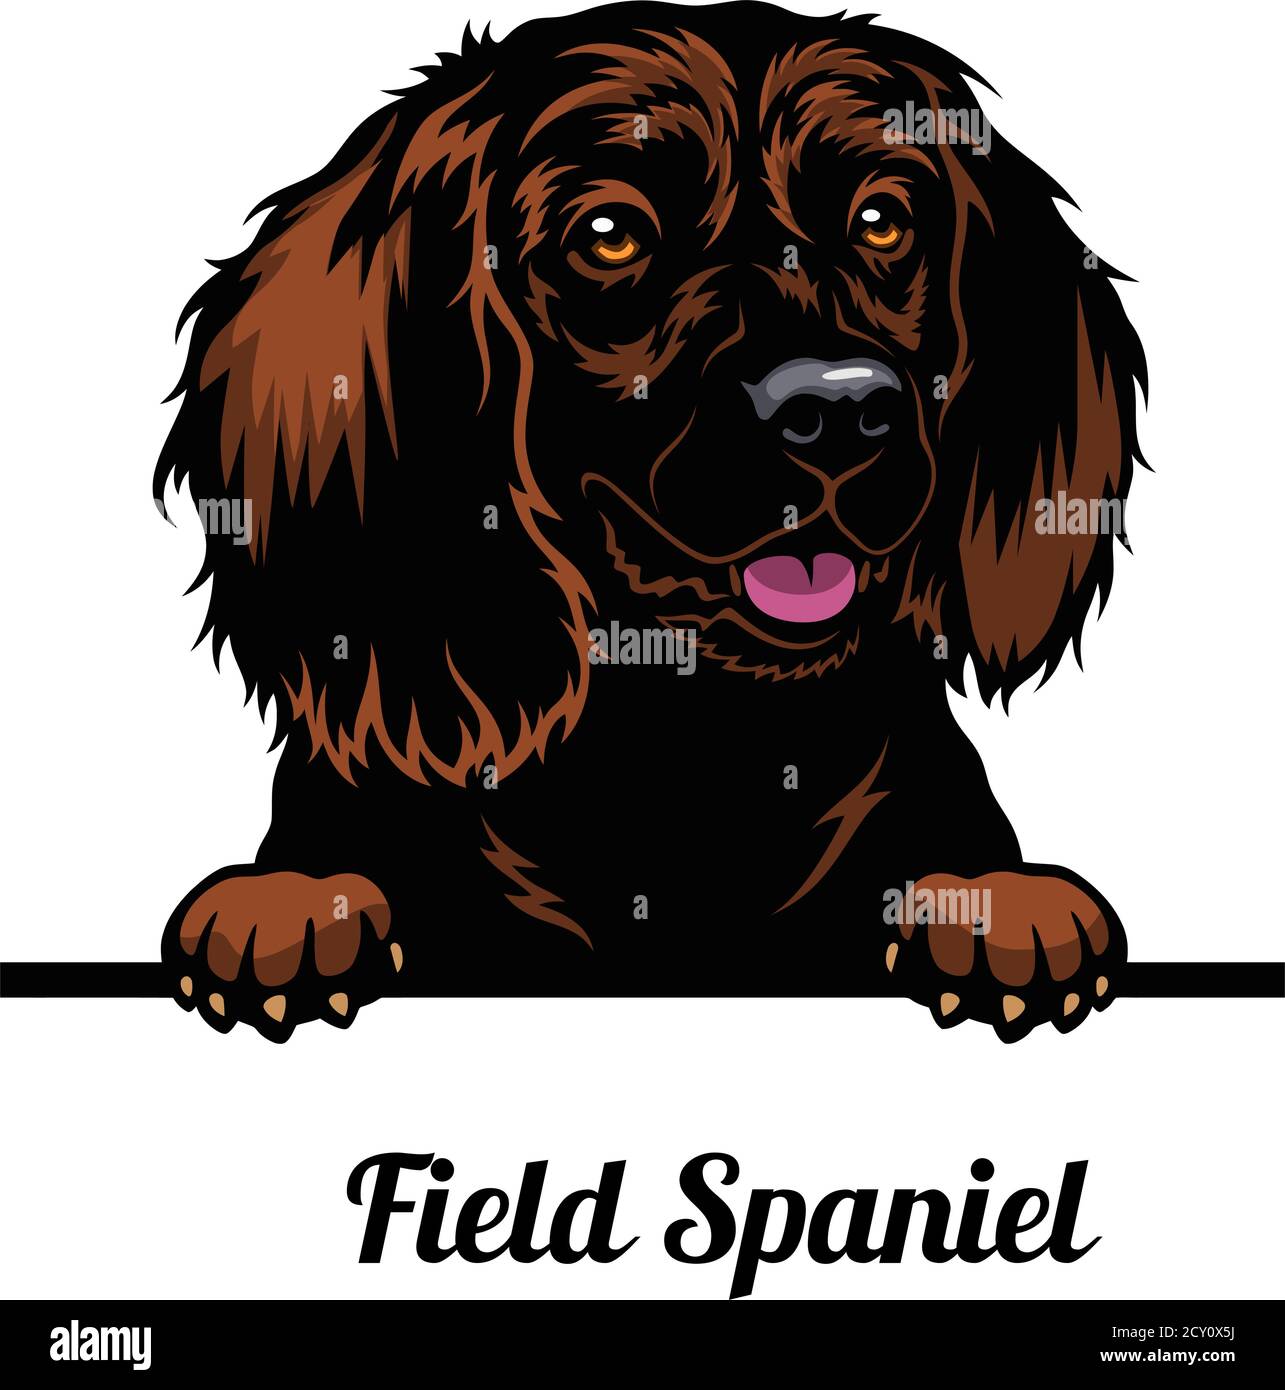 Capo campo Spaniel - razza cane. Immagine a colori di una testa di cani isolata su uno sfondo bianco Illustrazione Vettoriale